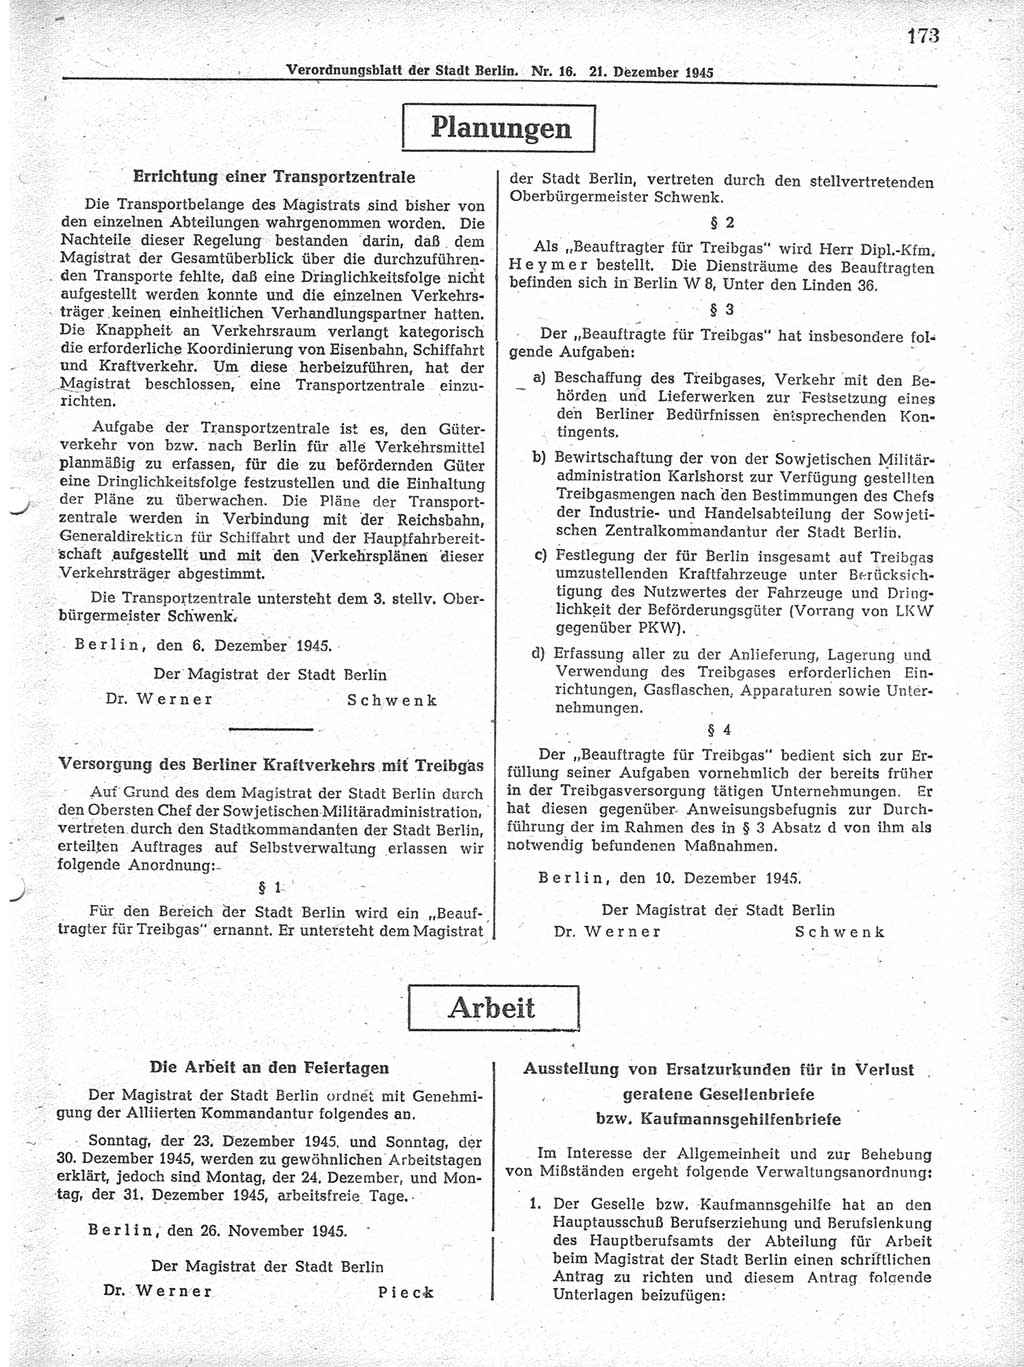 Verordnungsblatt (VOBl.) der Stadt Berlin 1945, Seite 173 (VOBl. Bln. 1945, S. 173)